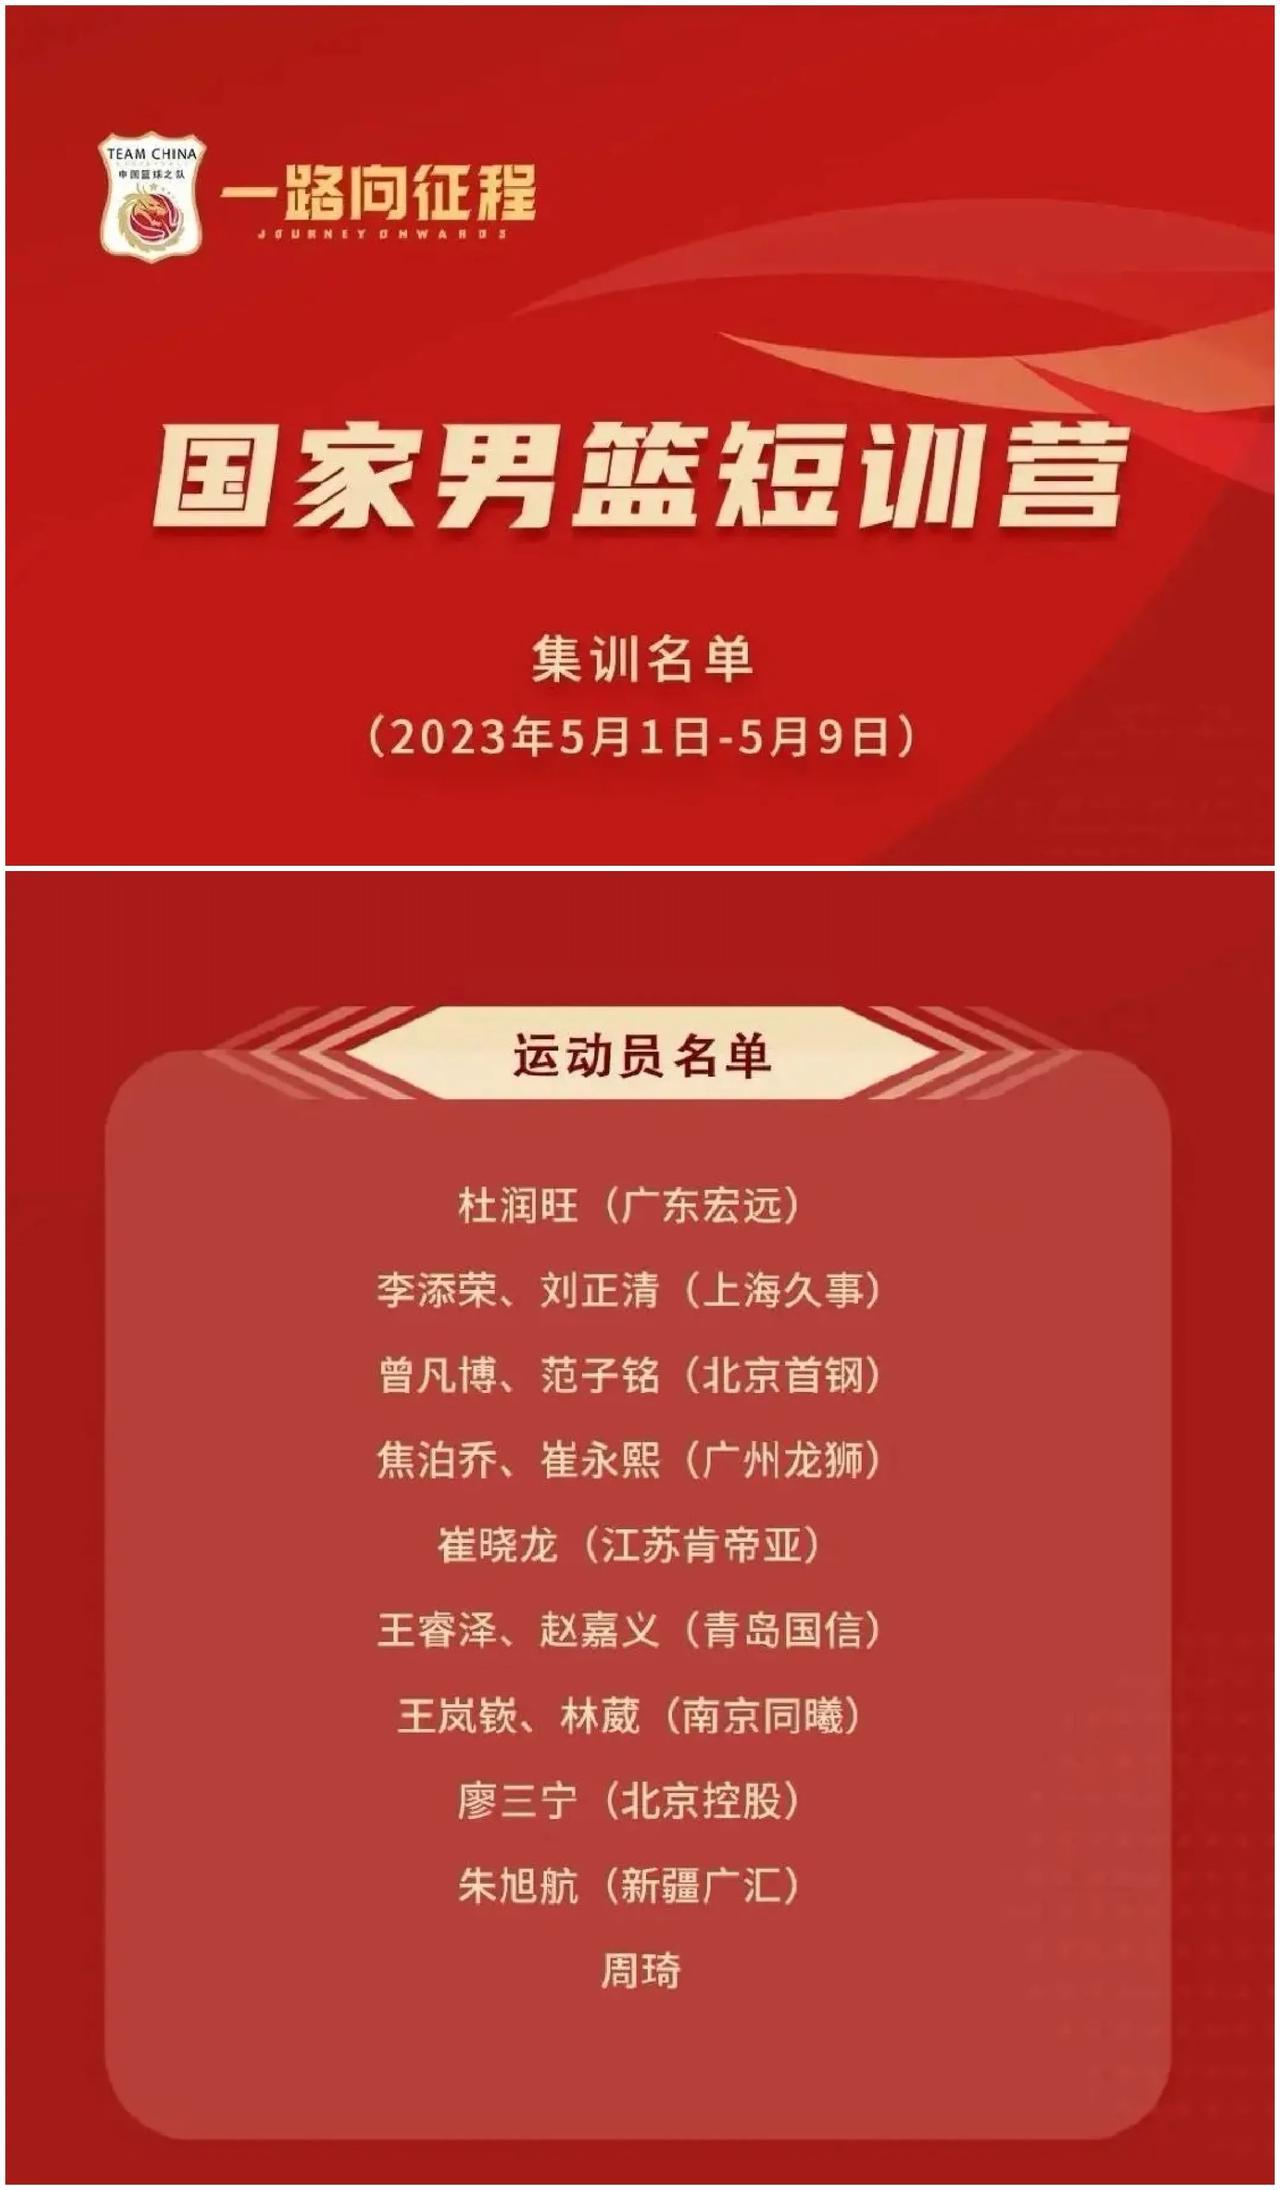 中国男篮短期训练营名单公布，本次人员名单有以下看点：
1、都很年轻！可以说是每支(1)